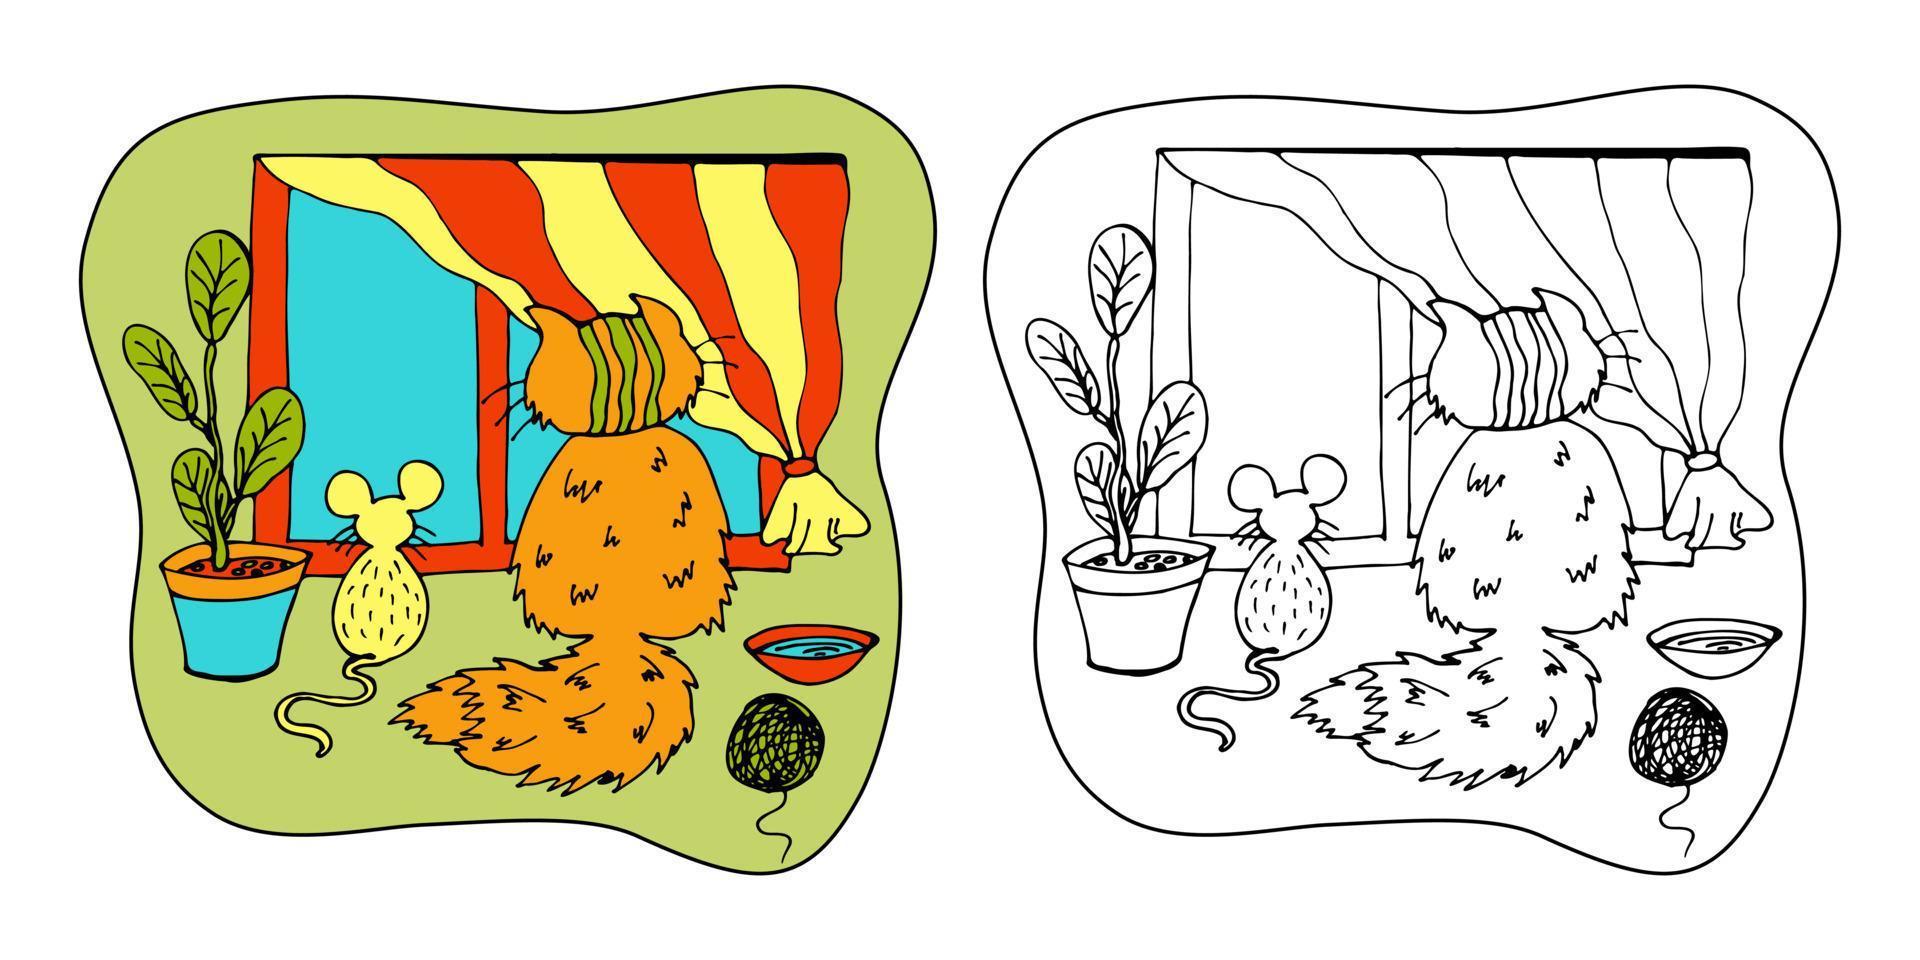 malbuchseite für kinder. süße katze und maus sitzen und schauen aus dem fenster. Vektor handgezeichnete Zentangl-Illustration mit Haustieren. Doodle-Cartoon-Stil.